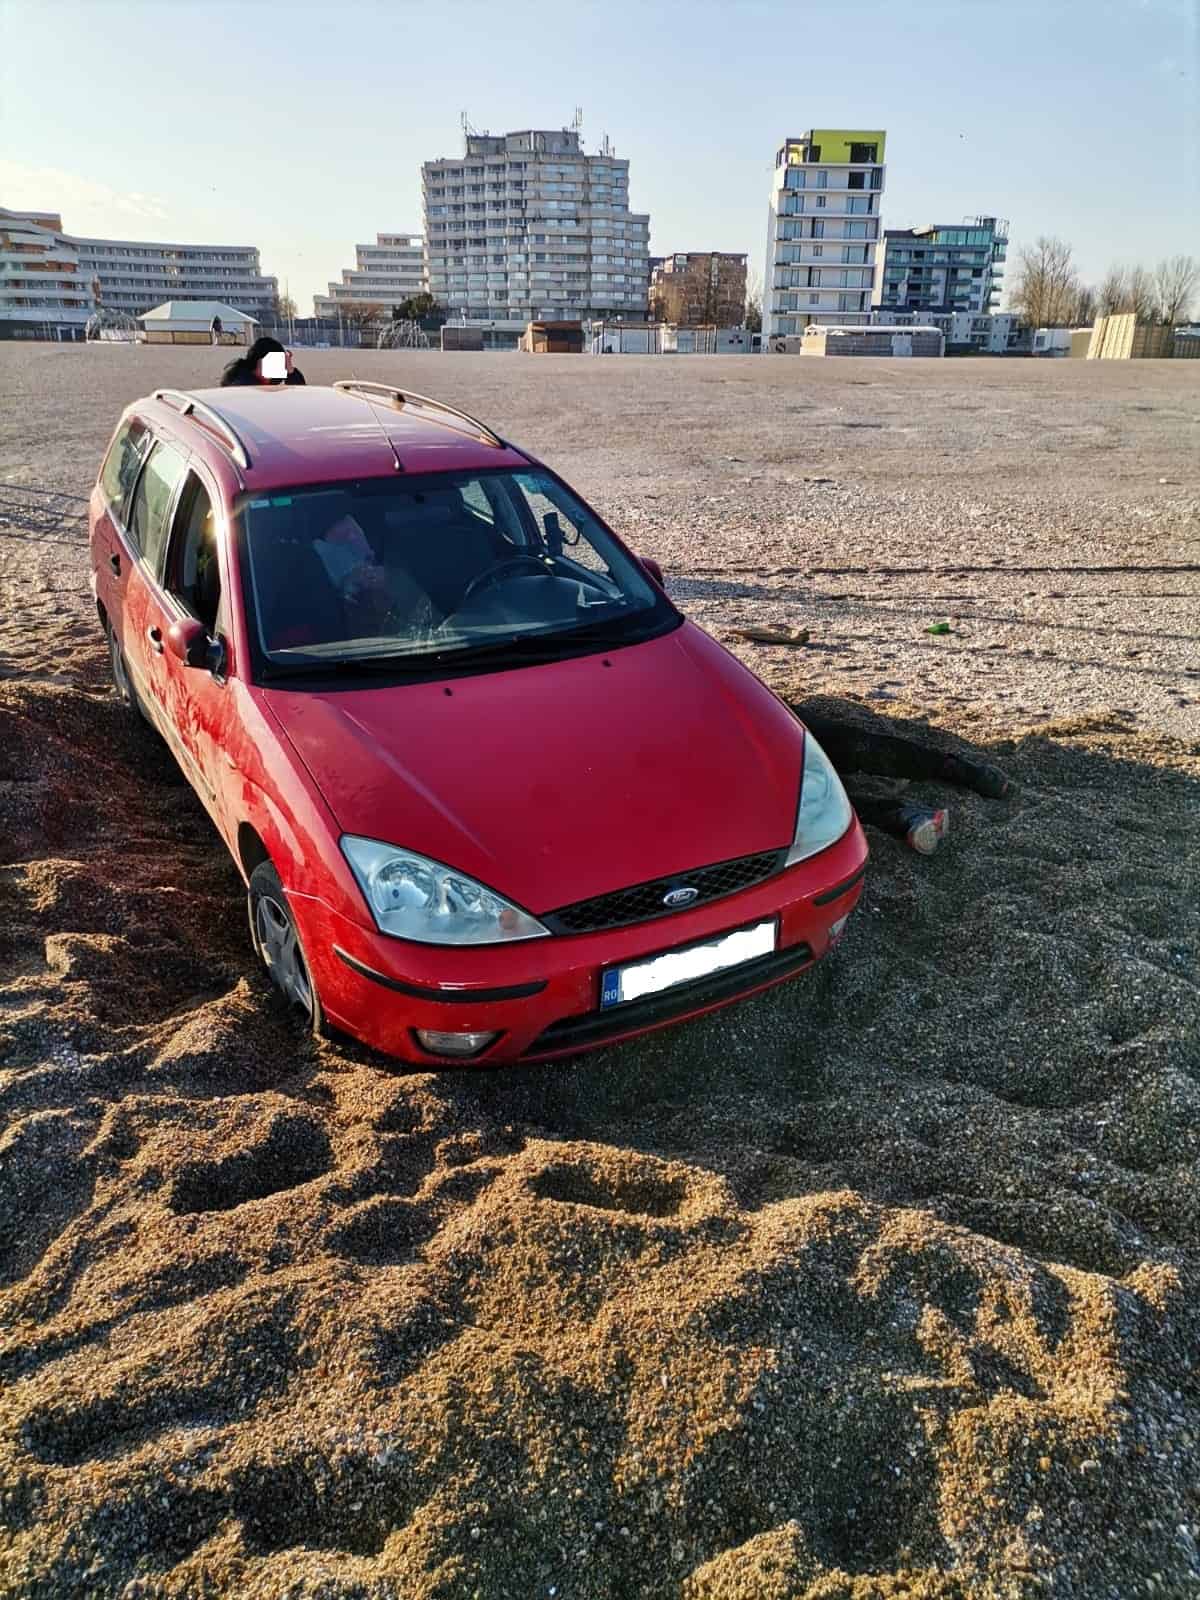 foto şofer amendat cu 10.000 de lei după ce a rămas blocat cu maşina în nisipul de pe plajă